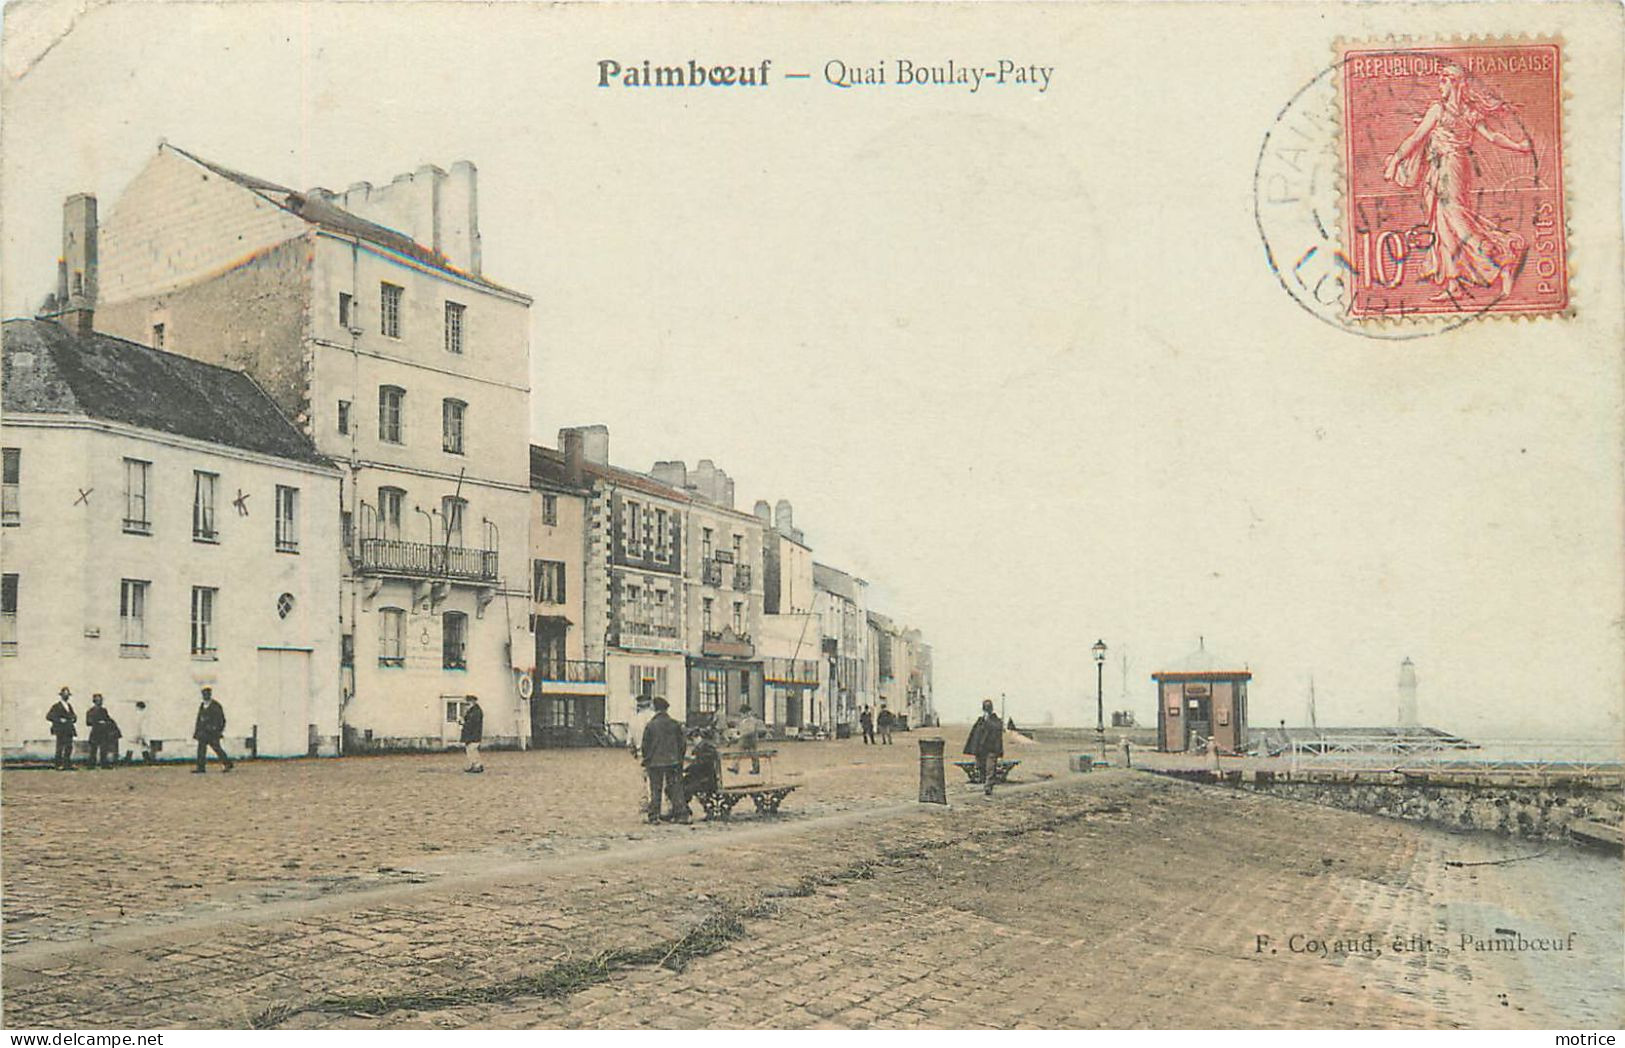 PAIMBOEUF - Quai Boulay-paty. - Paimboeuf